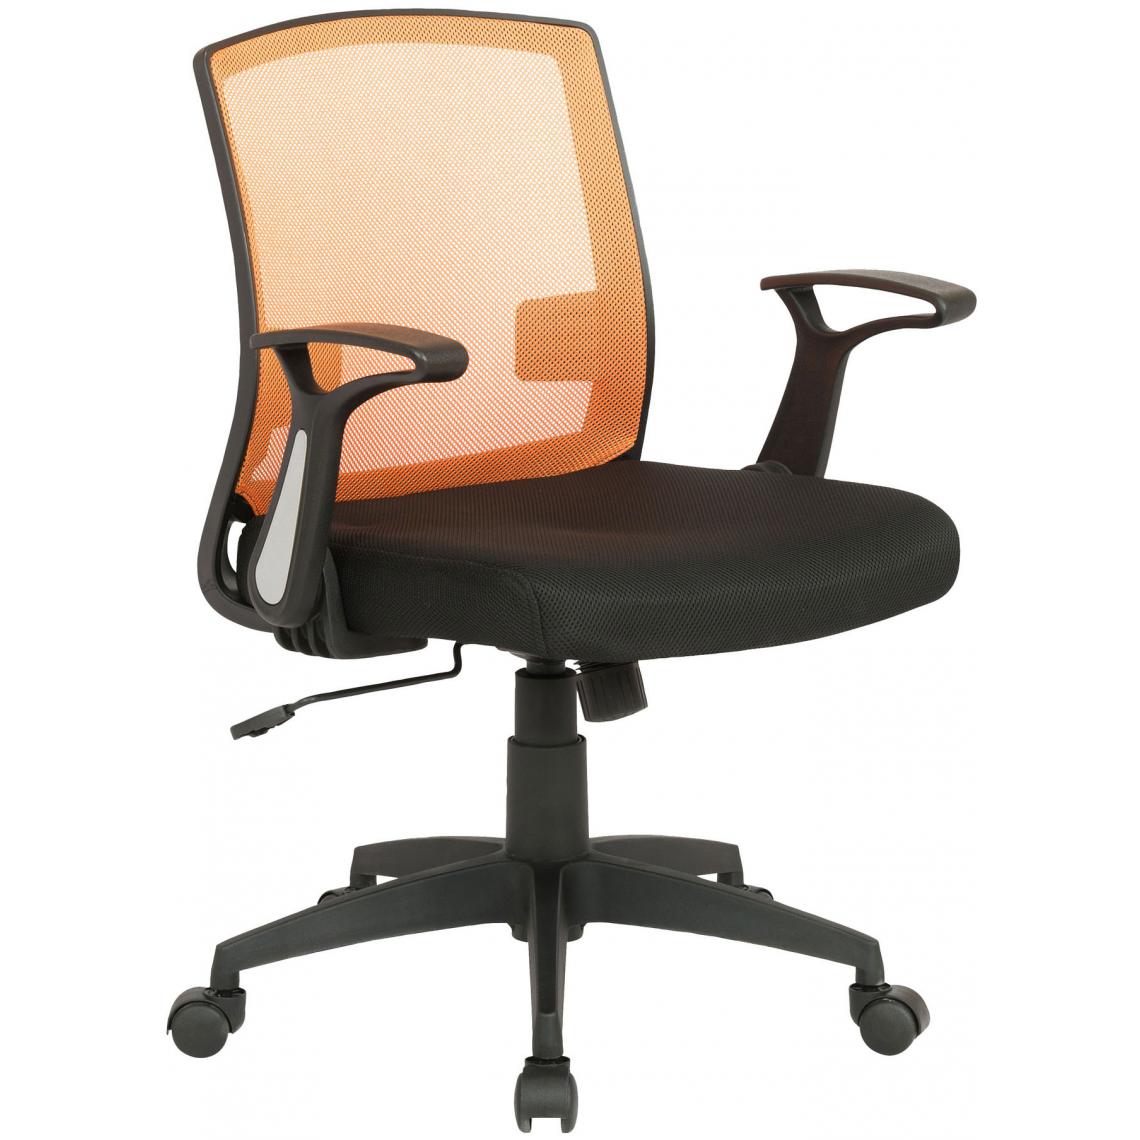 Icaverne - Joli Chaise de bureau gamme Sri Jayawardenapura couleur noir / orange - Chaises